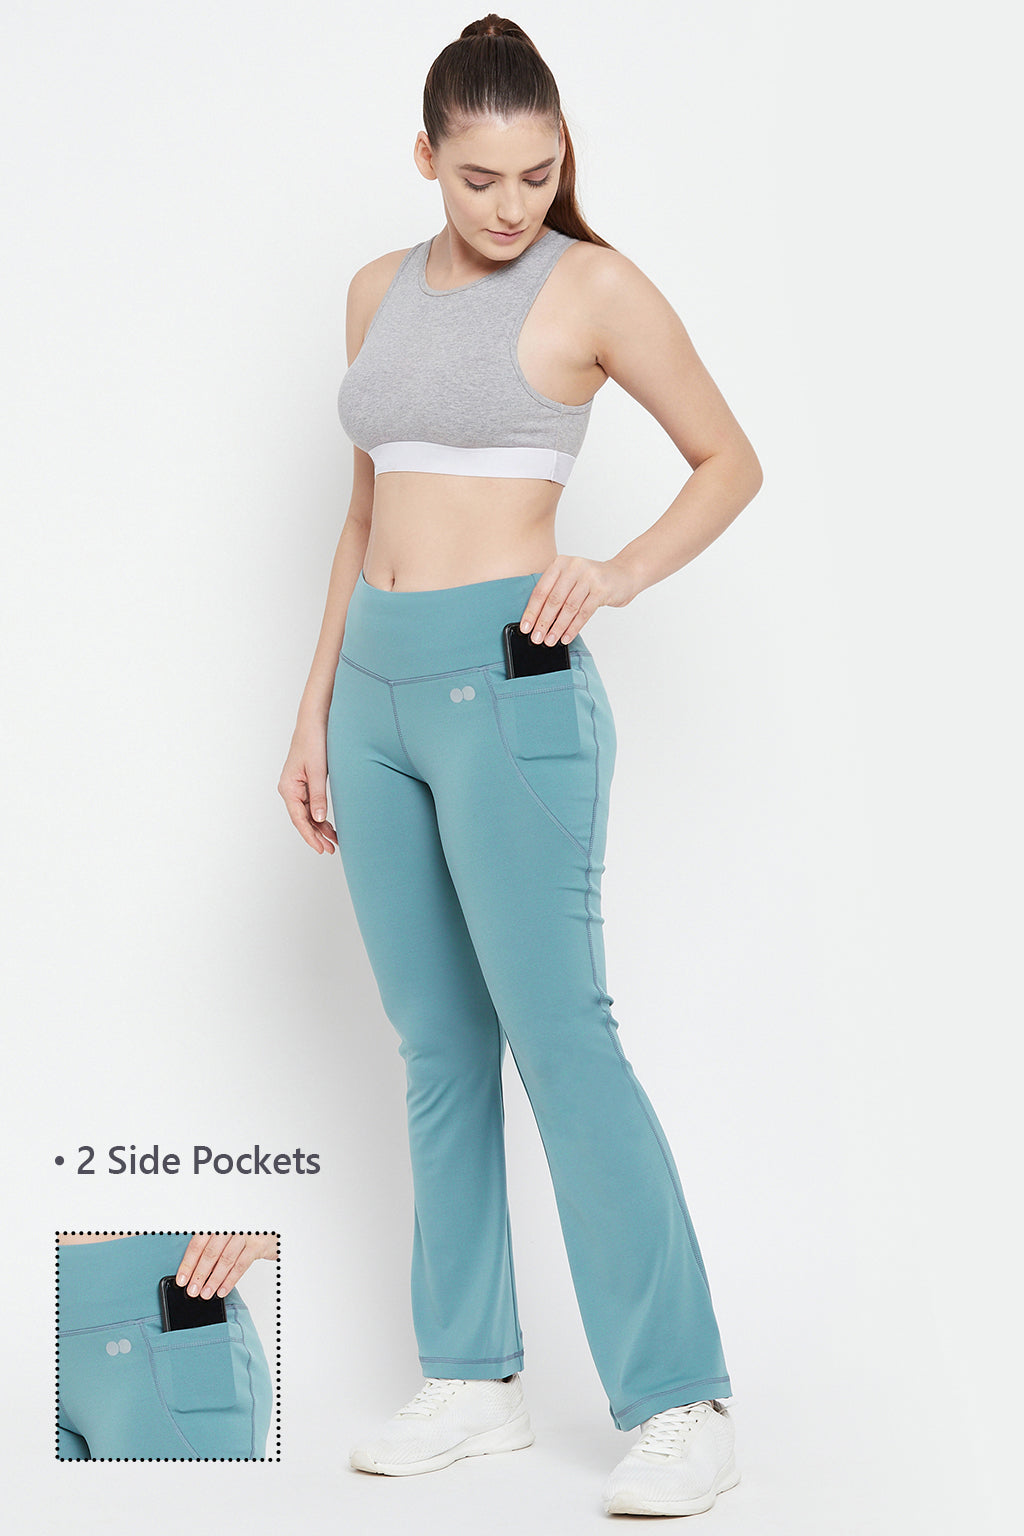 Sky Blue High-Waist Flared Yoga Pants with Side Pockets - ZERESOUQ.COM